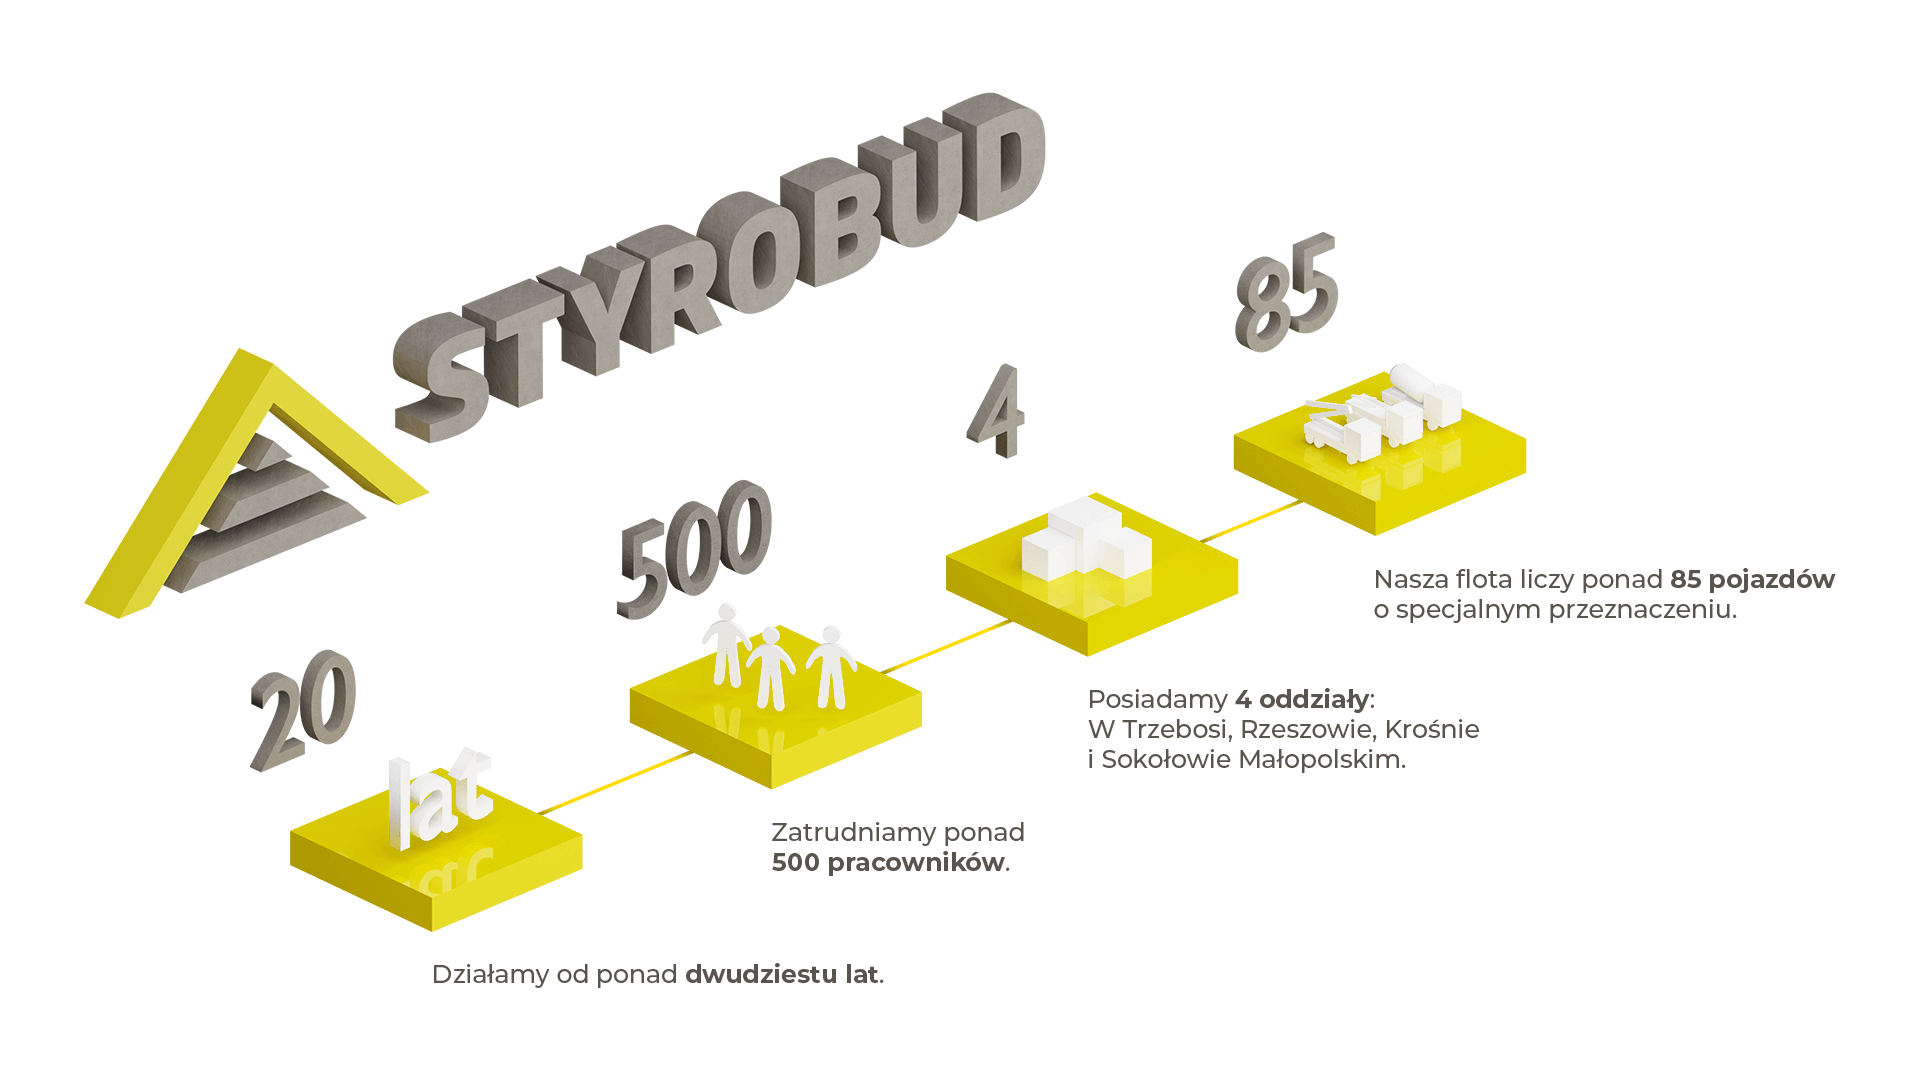 infografika opisująca strukturę firmy Styrobud, rozmiary floty, ilość zatrudnianych pracowników i historię na rynku budowlanym.